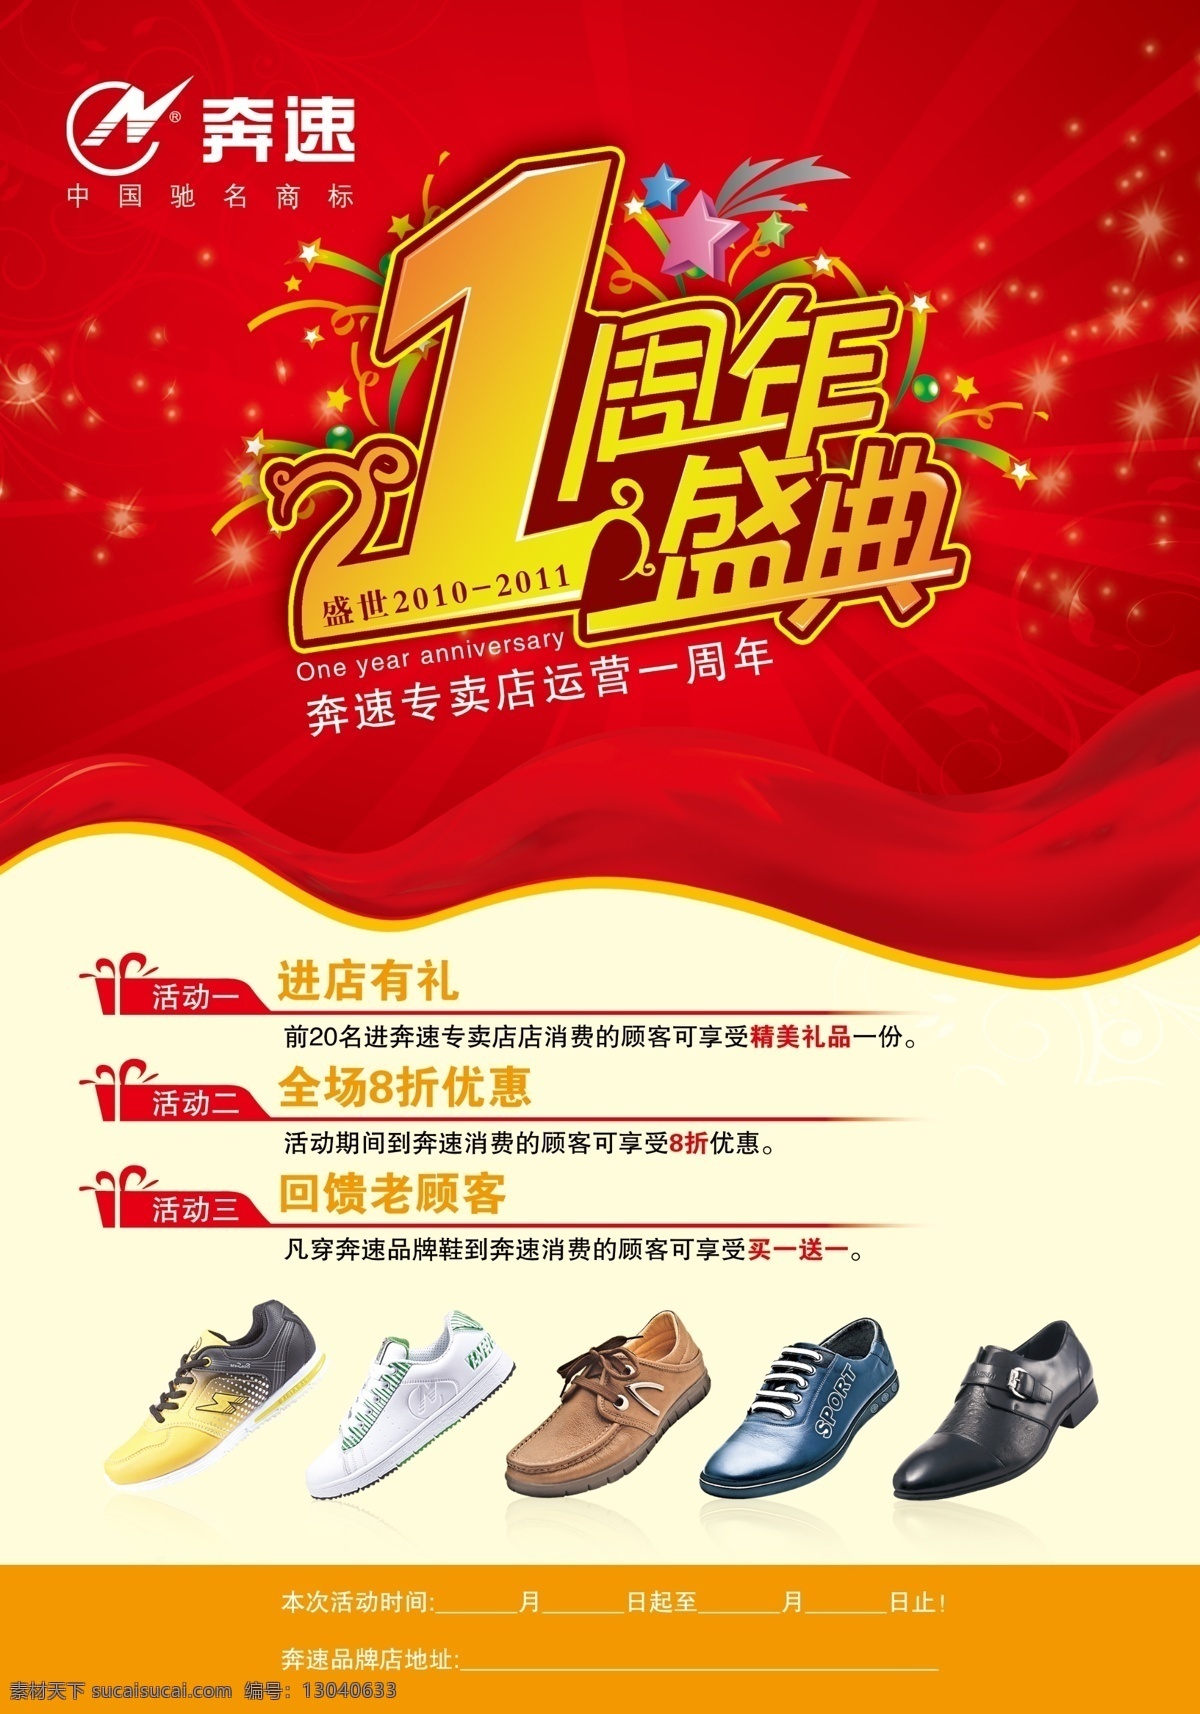 奔 速 周年庆 dm 单 奔速 dm传单 一周年盛典 运动鞋 皮鞋 dm宣传单 广告设计模板 源文件